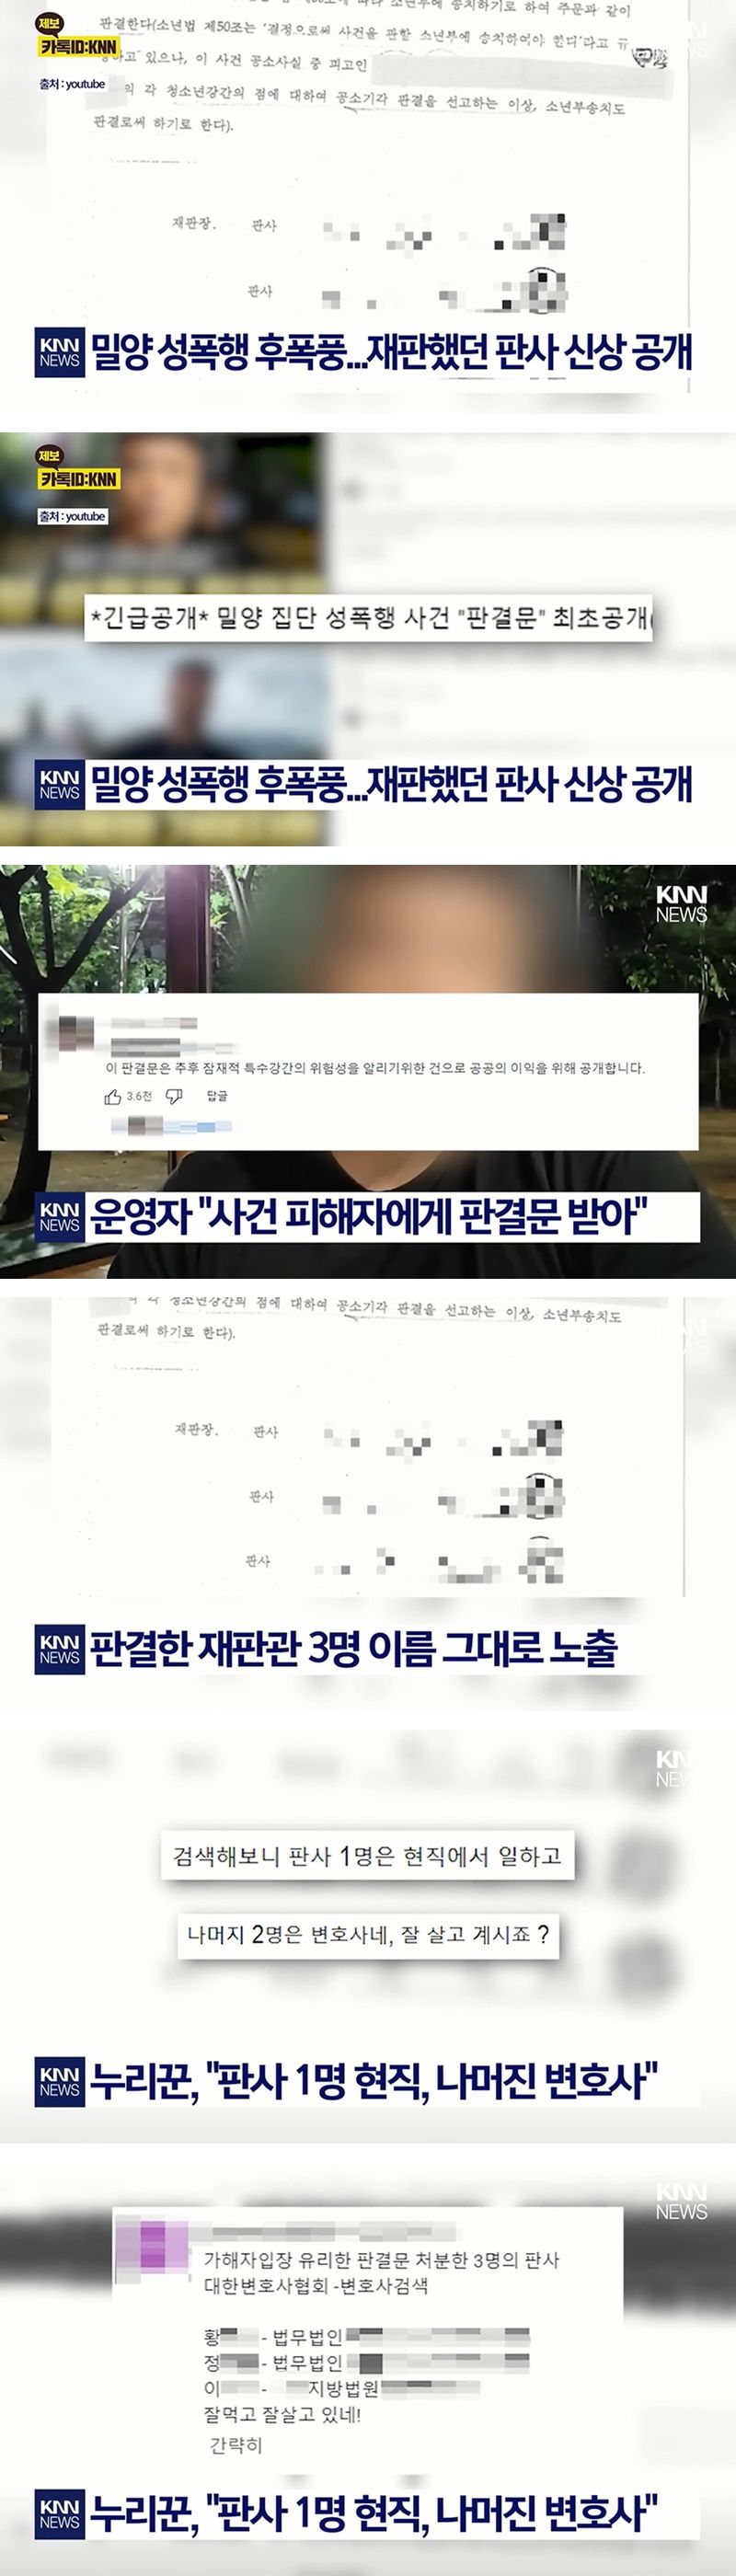 밀양 성폭행 재판 판사 신상공개 확산.jpg